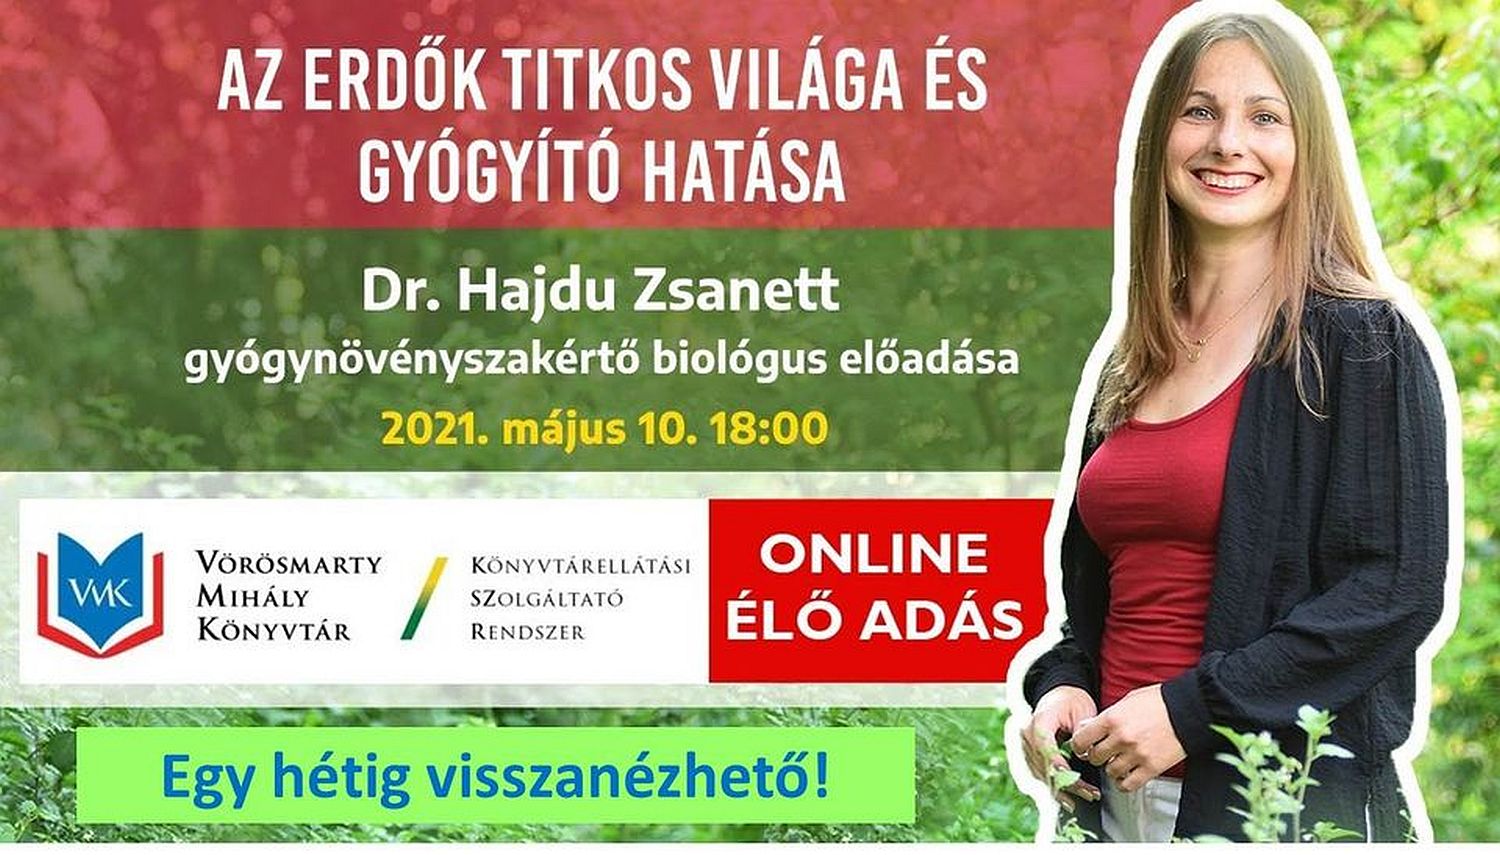 Az erdők titkos világa és gyógyító hatása - dr. Hajdu Zsanett online előadása hétfőn